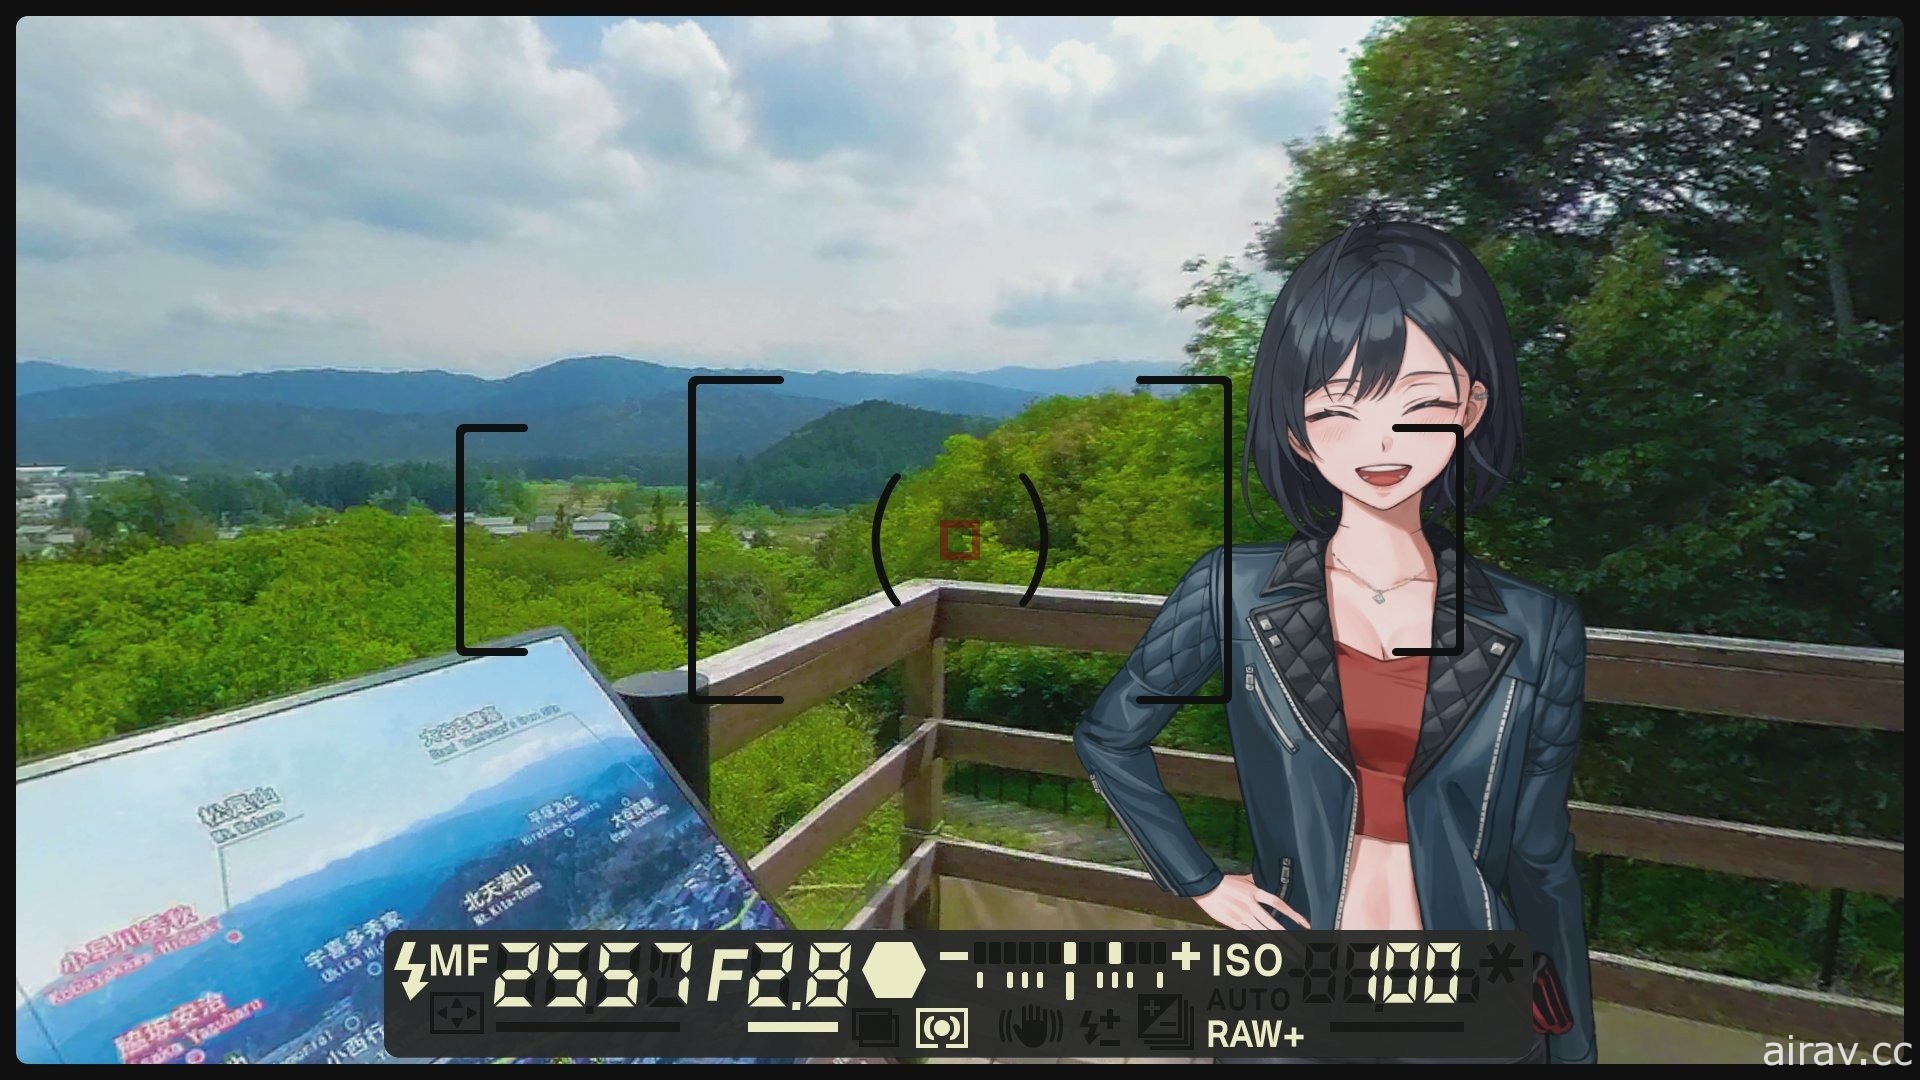 【試玩】《風雨來記 4》透過 360 度環景呈現騎乘光景 體驗 “日本中心” 岐阜的魅力